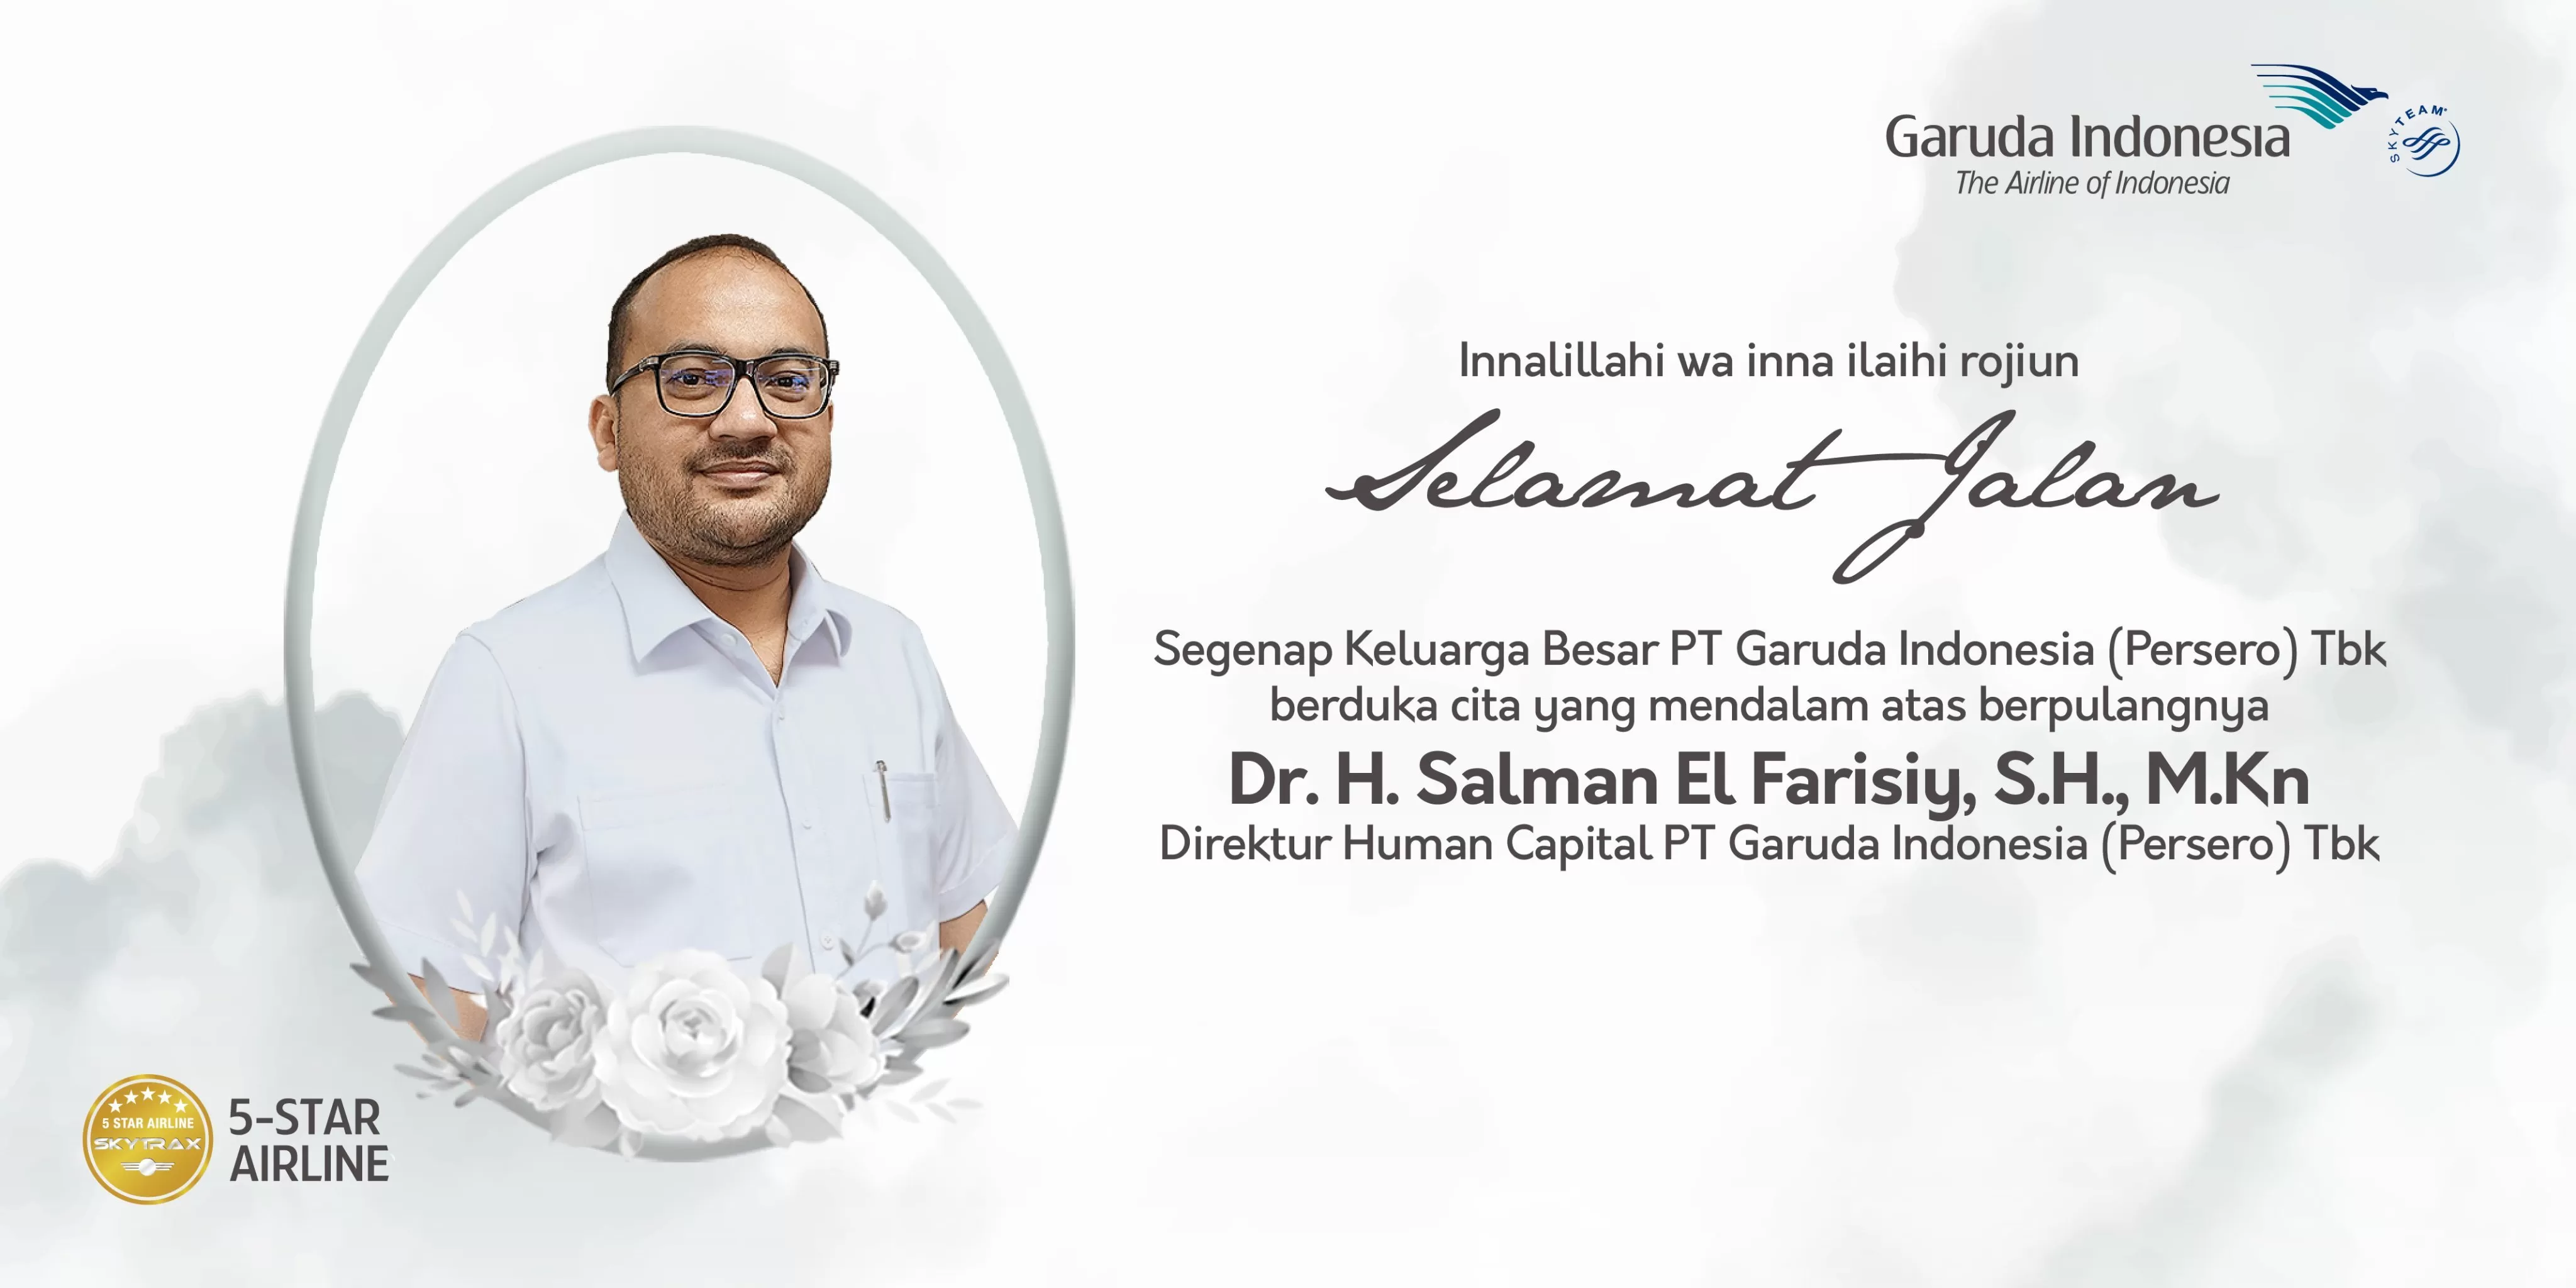 Riwayat Karir Salman El Farisiy Direktur Human Capital PT Garuda Indonesia yang Ternyata Pernah Punya Jabatan Mentereng di Krakatau Steel